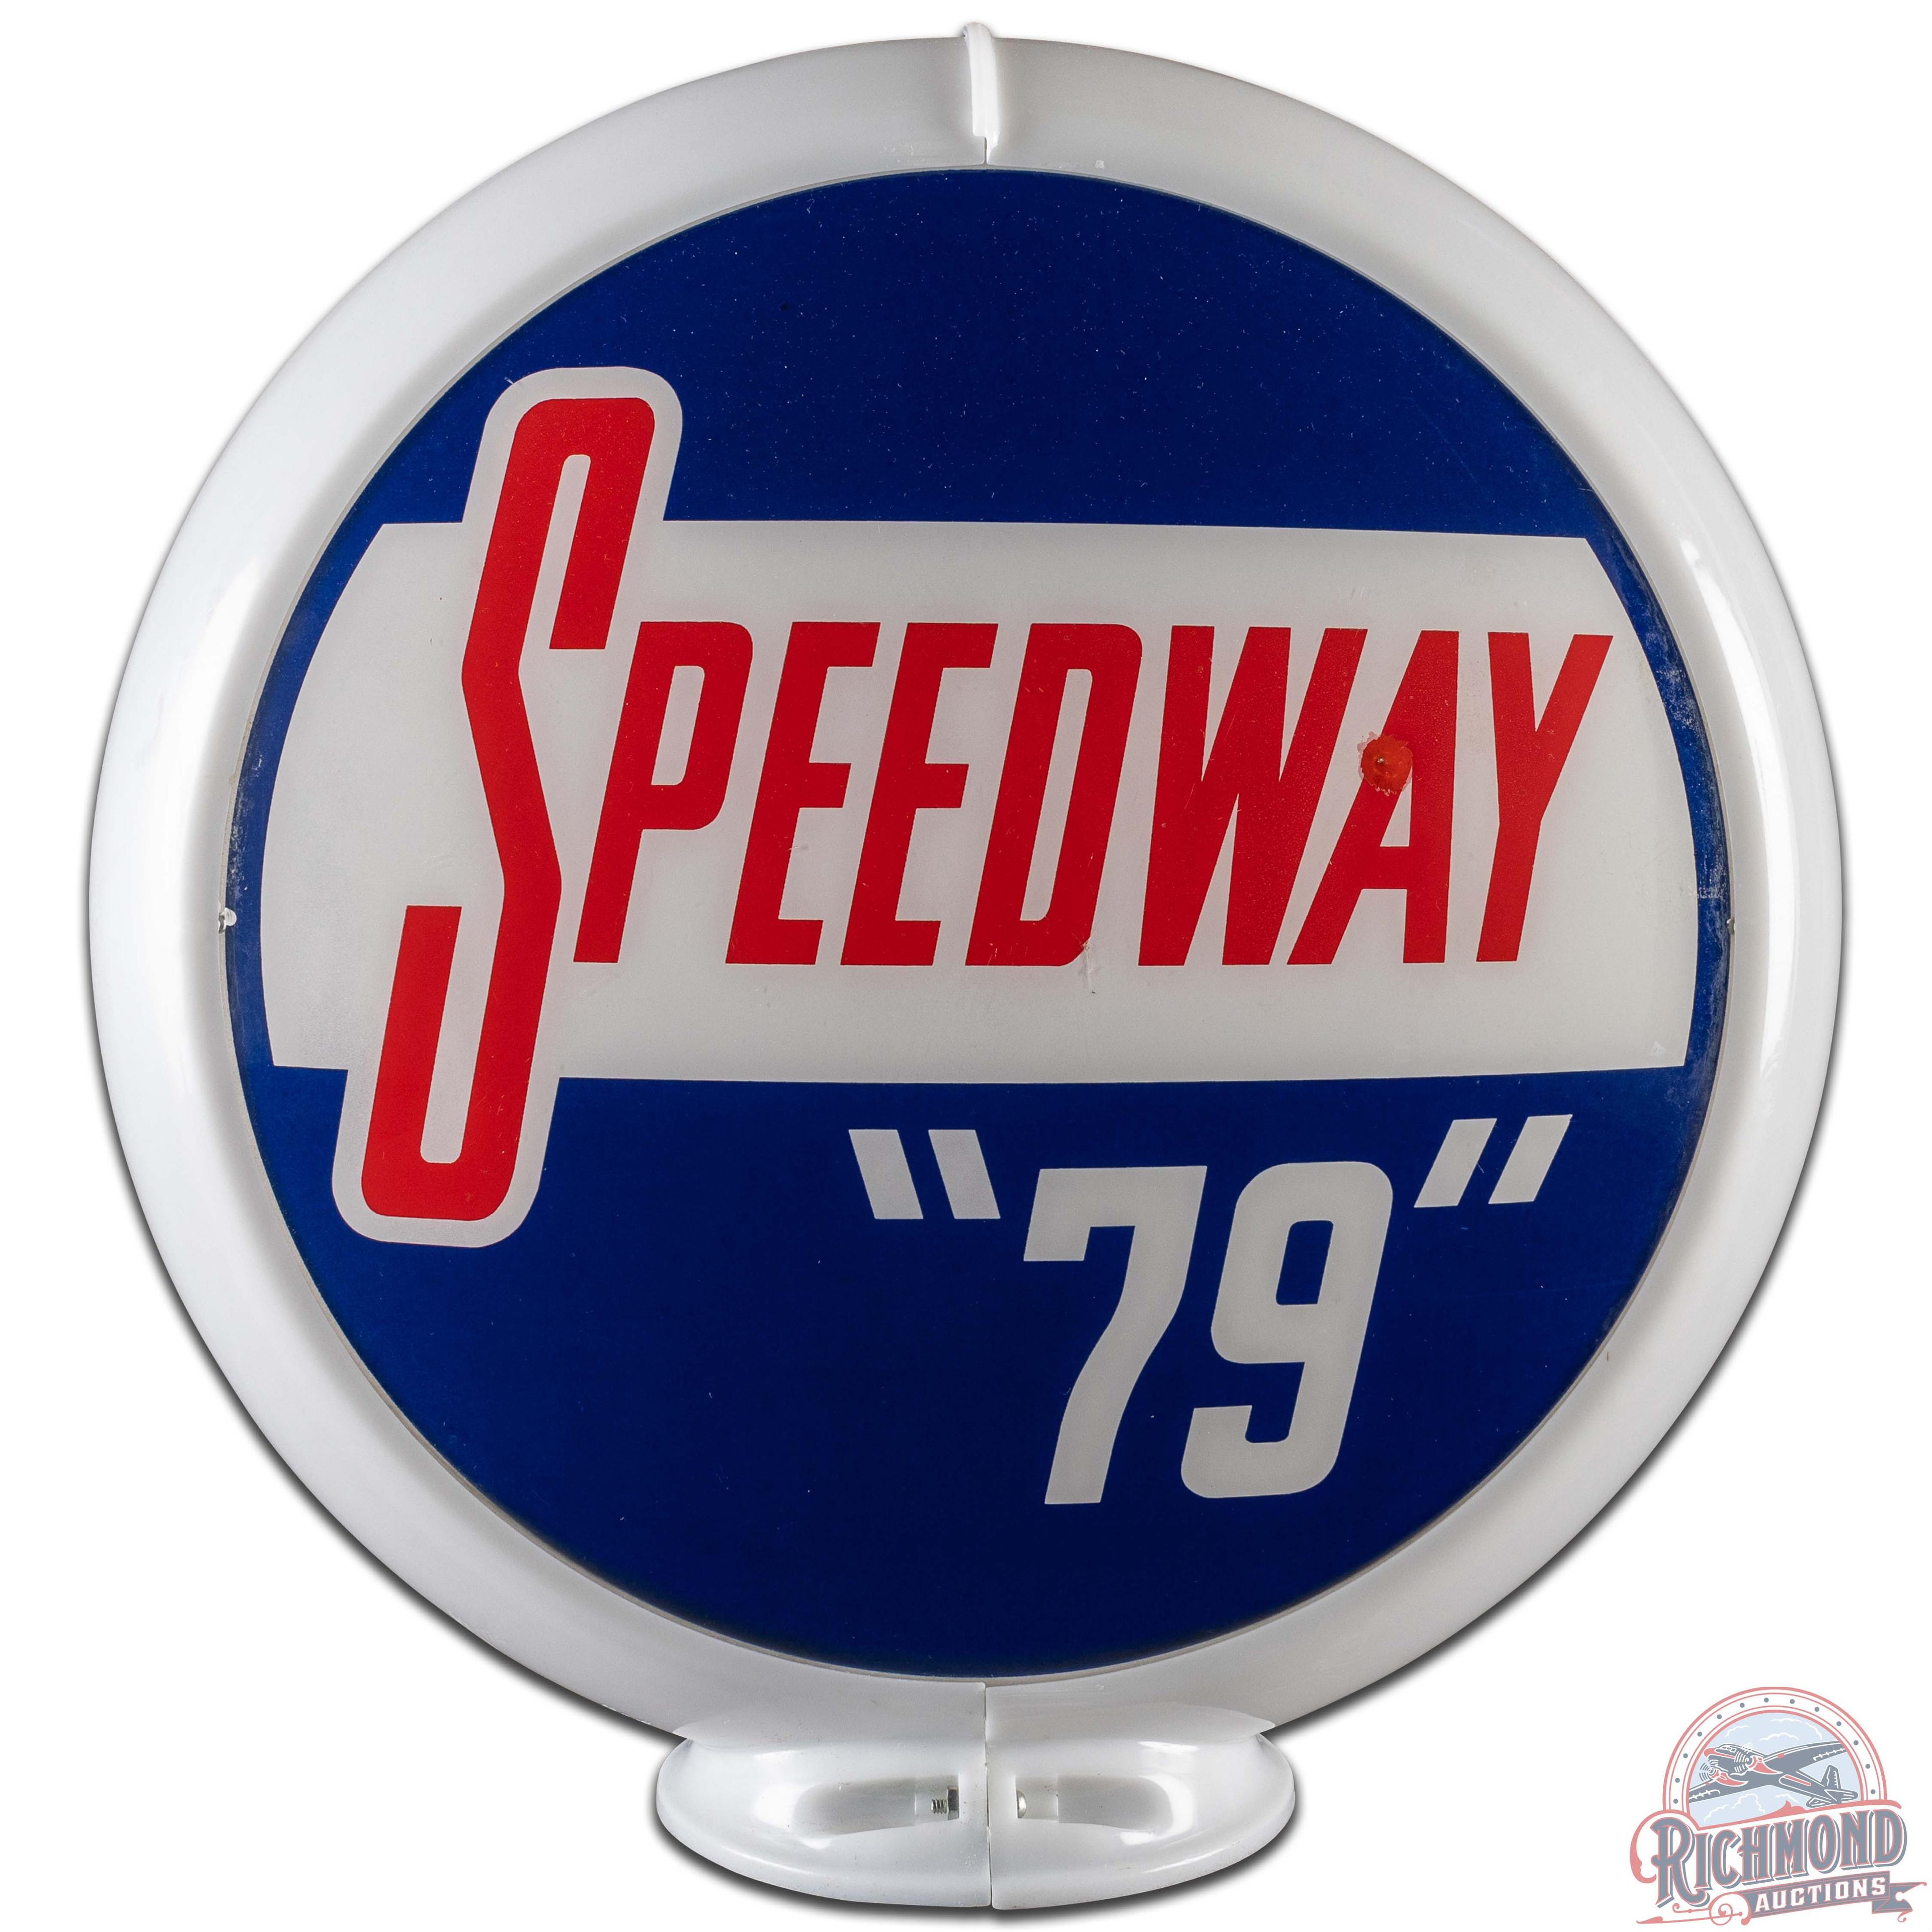 Speedway "79" 13.5" Gas Pump Globe Complete